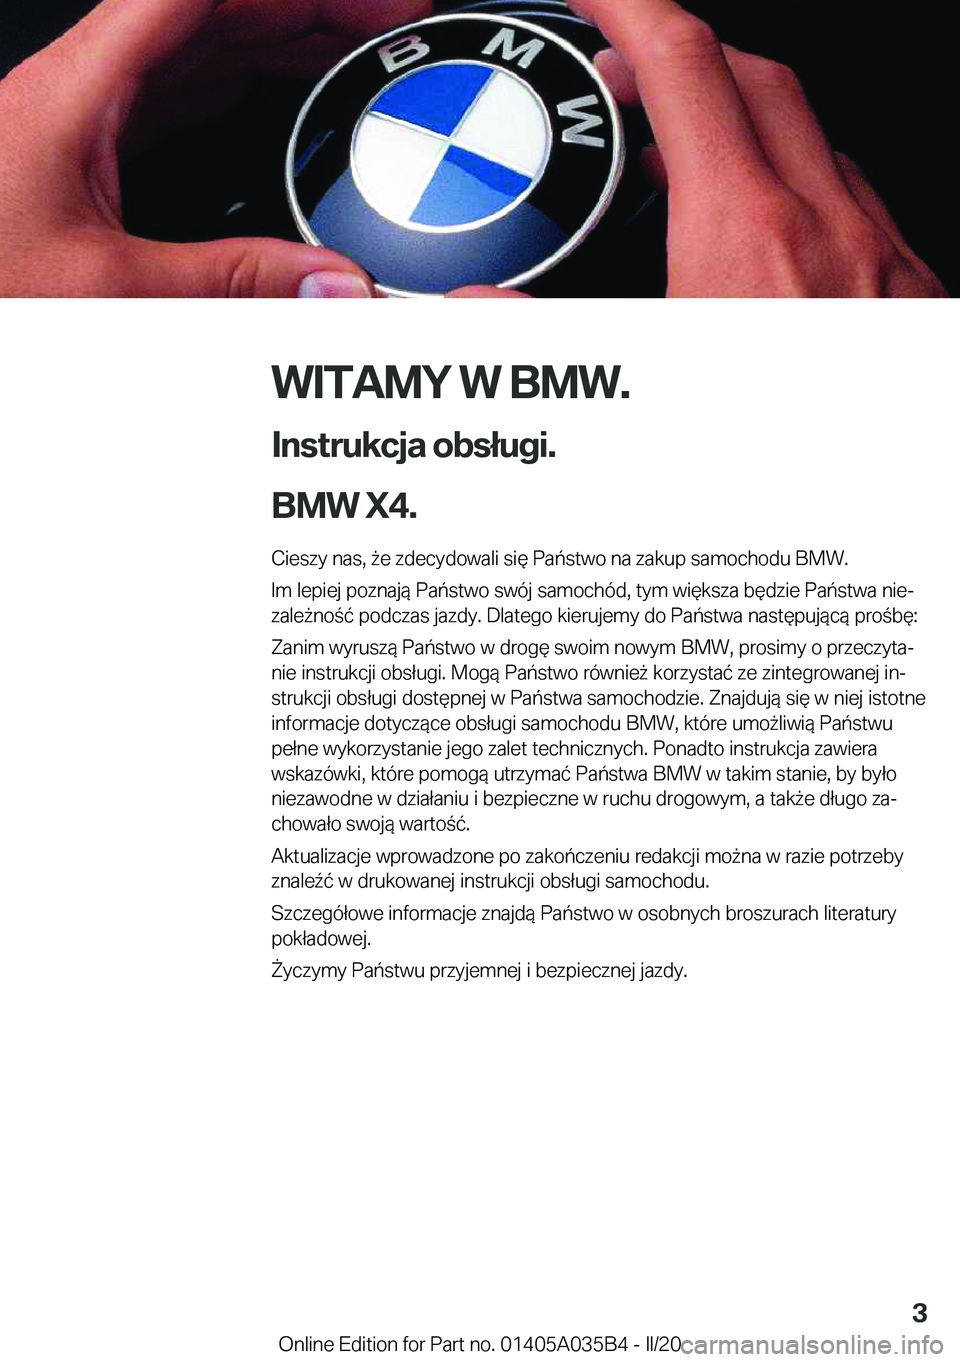 BMW X4 2020  Instrukcja obsługi (in Polish) �W�I�T�A�M�Y��W��B�M�W�.
�I�n�s�t�r�u�k�c�j�a��o�b�s�ł�u�g�i�.
�B�M�W��X�4�. �C�i�e�s�z�y��n�a�s�,�9�e��z�d�e�c�y�d�o�w�a�l�i��s�i�